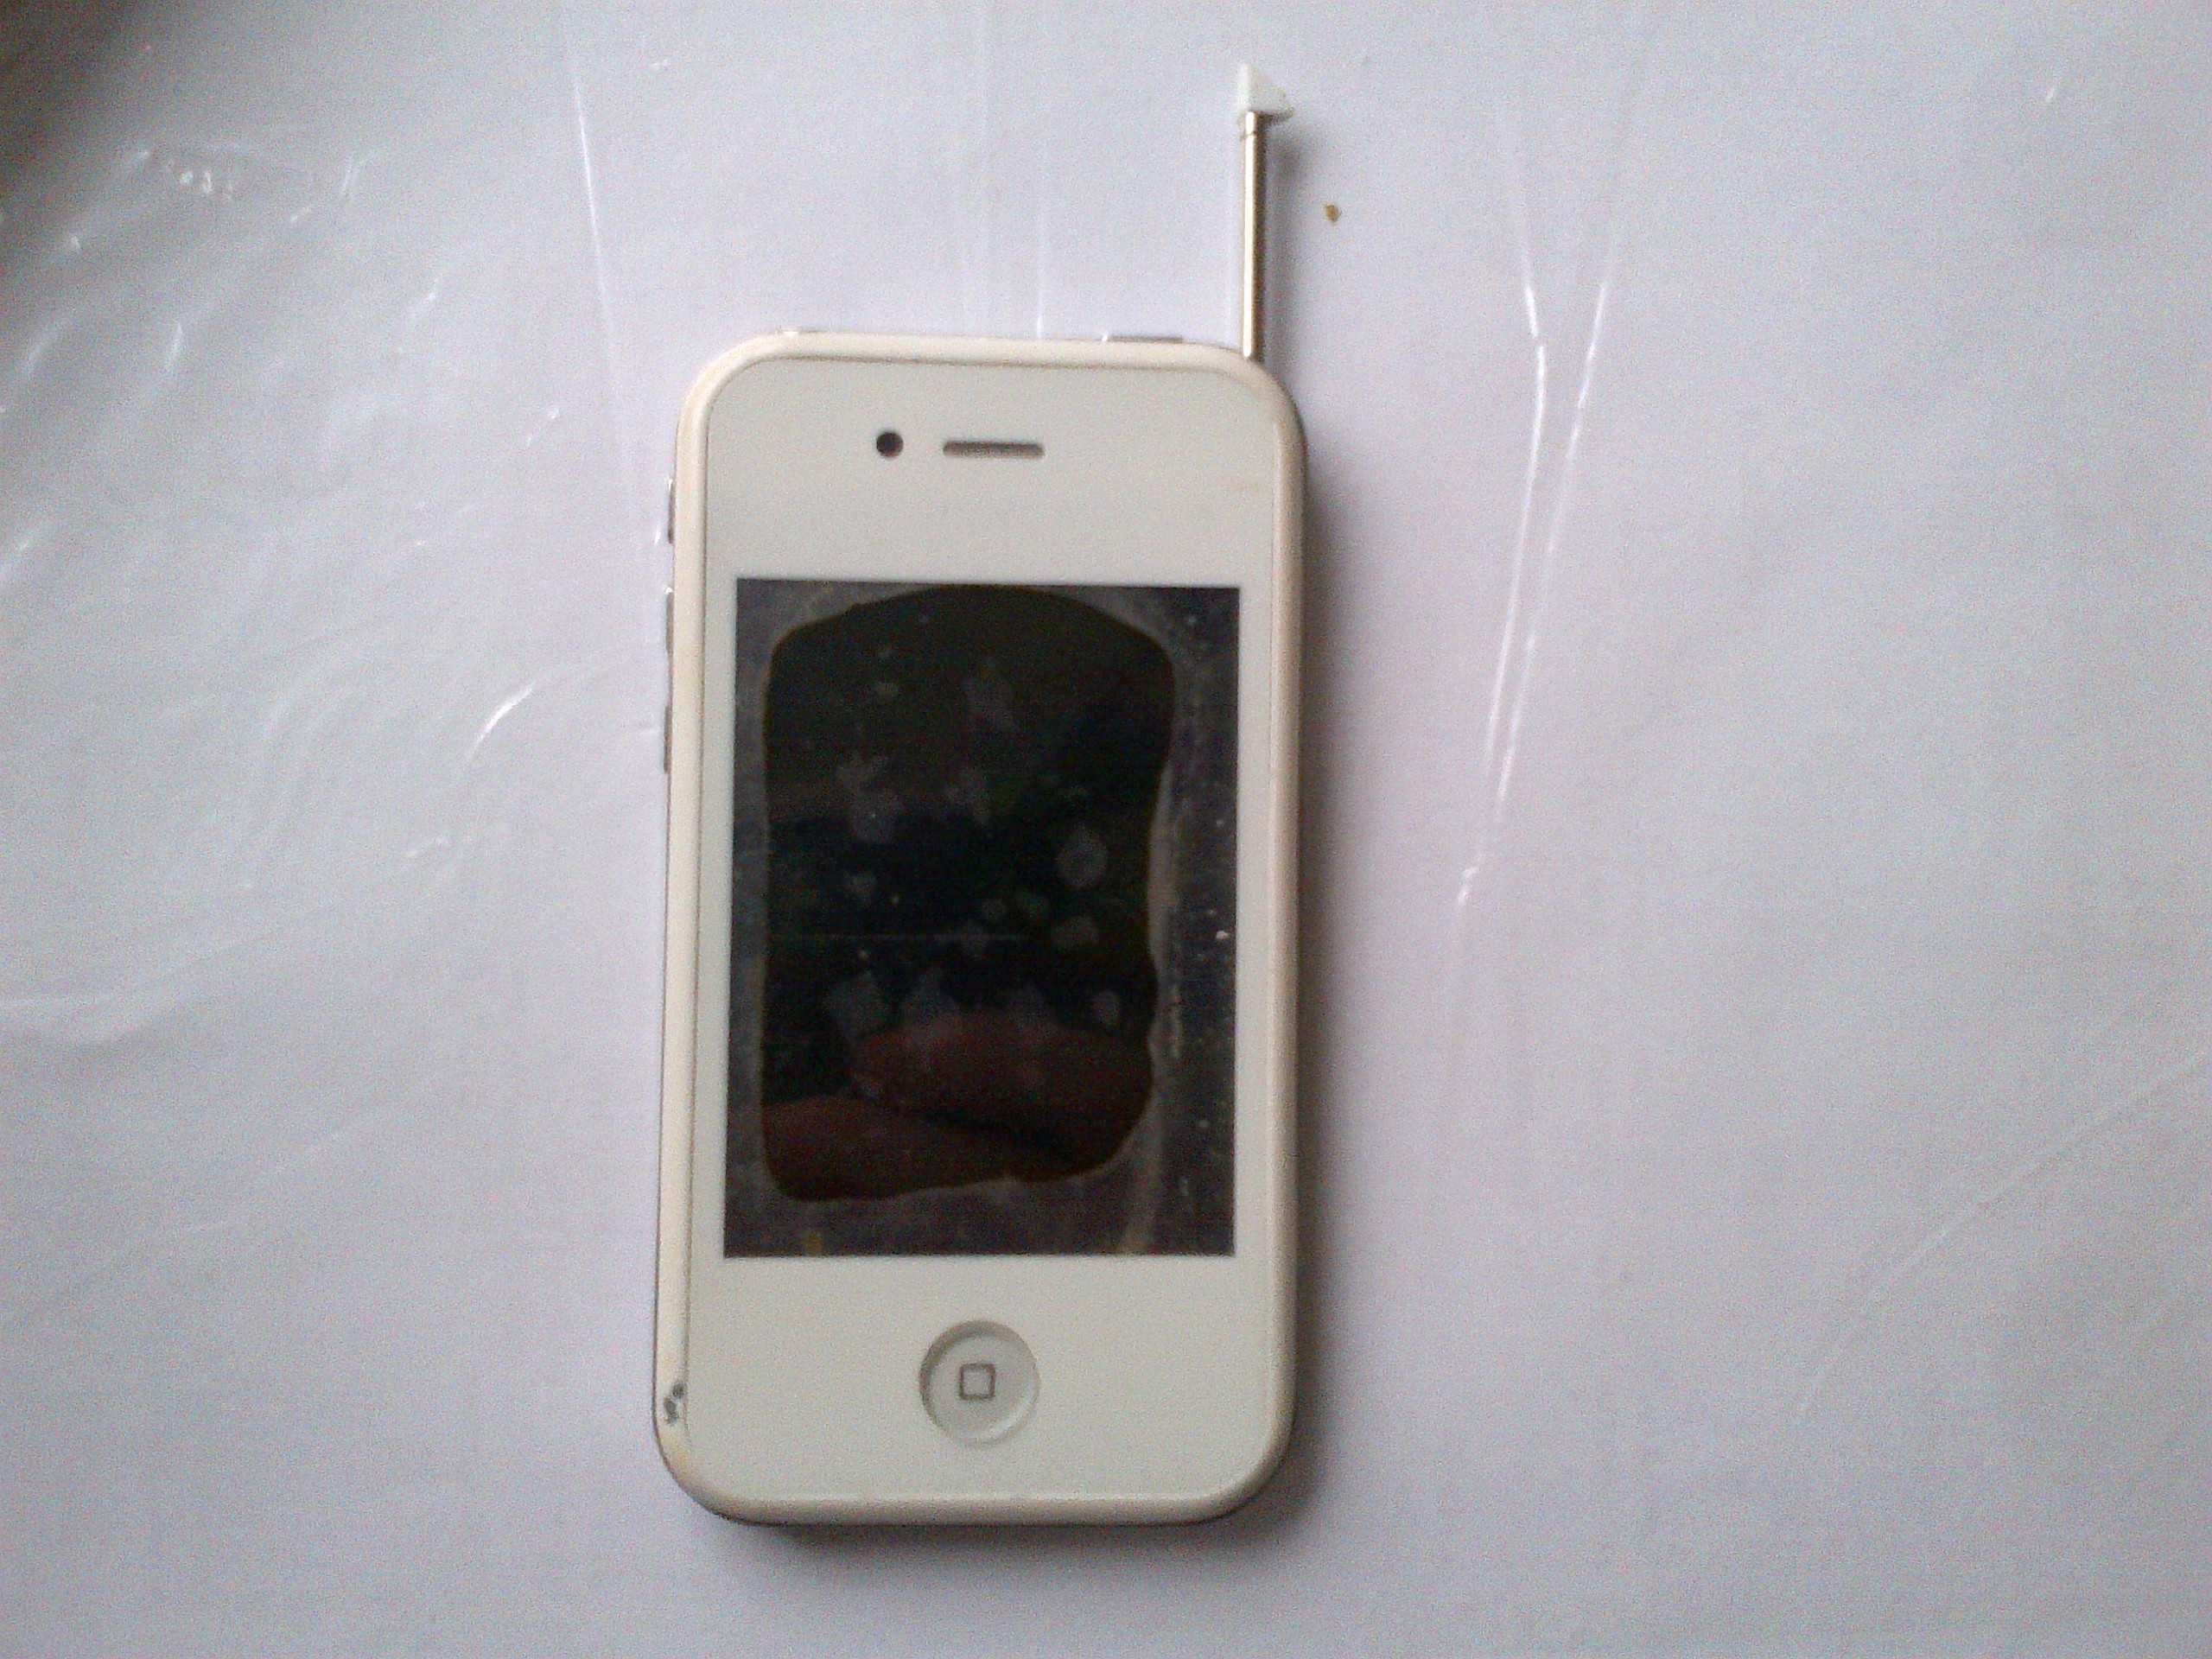 iPhone model : i 5 Смартфон